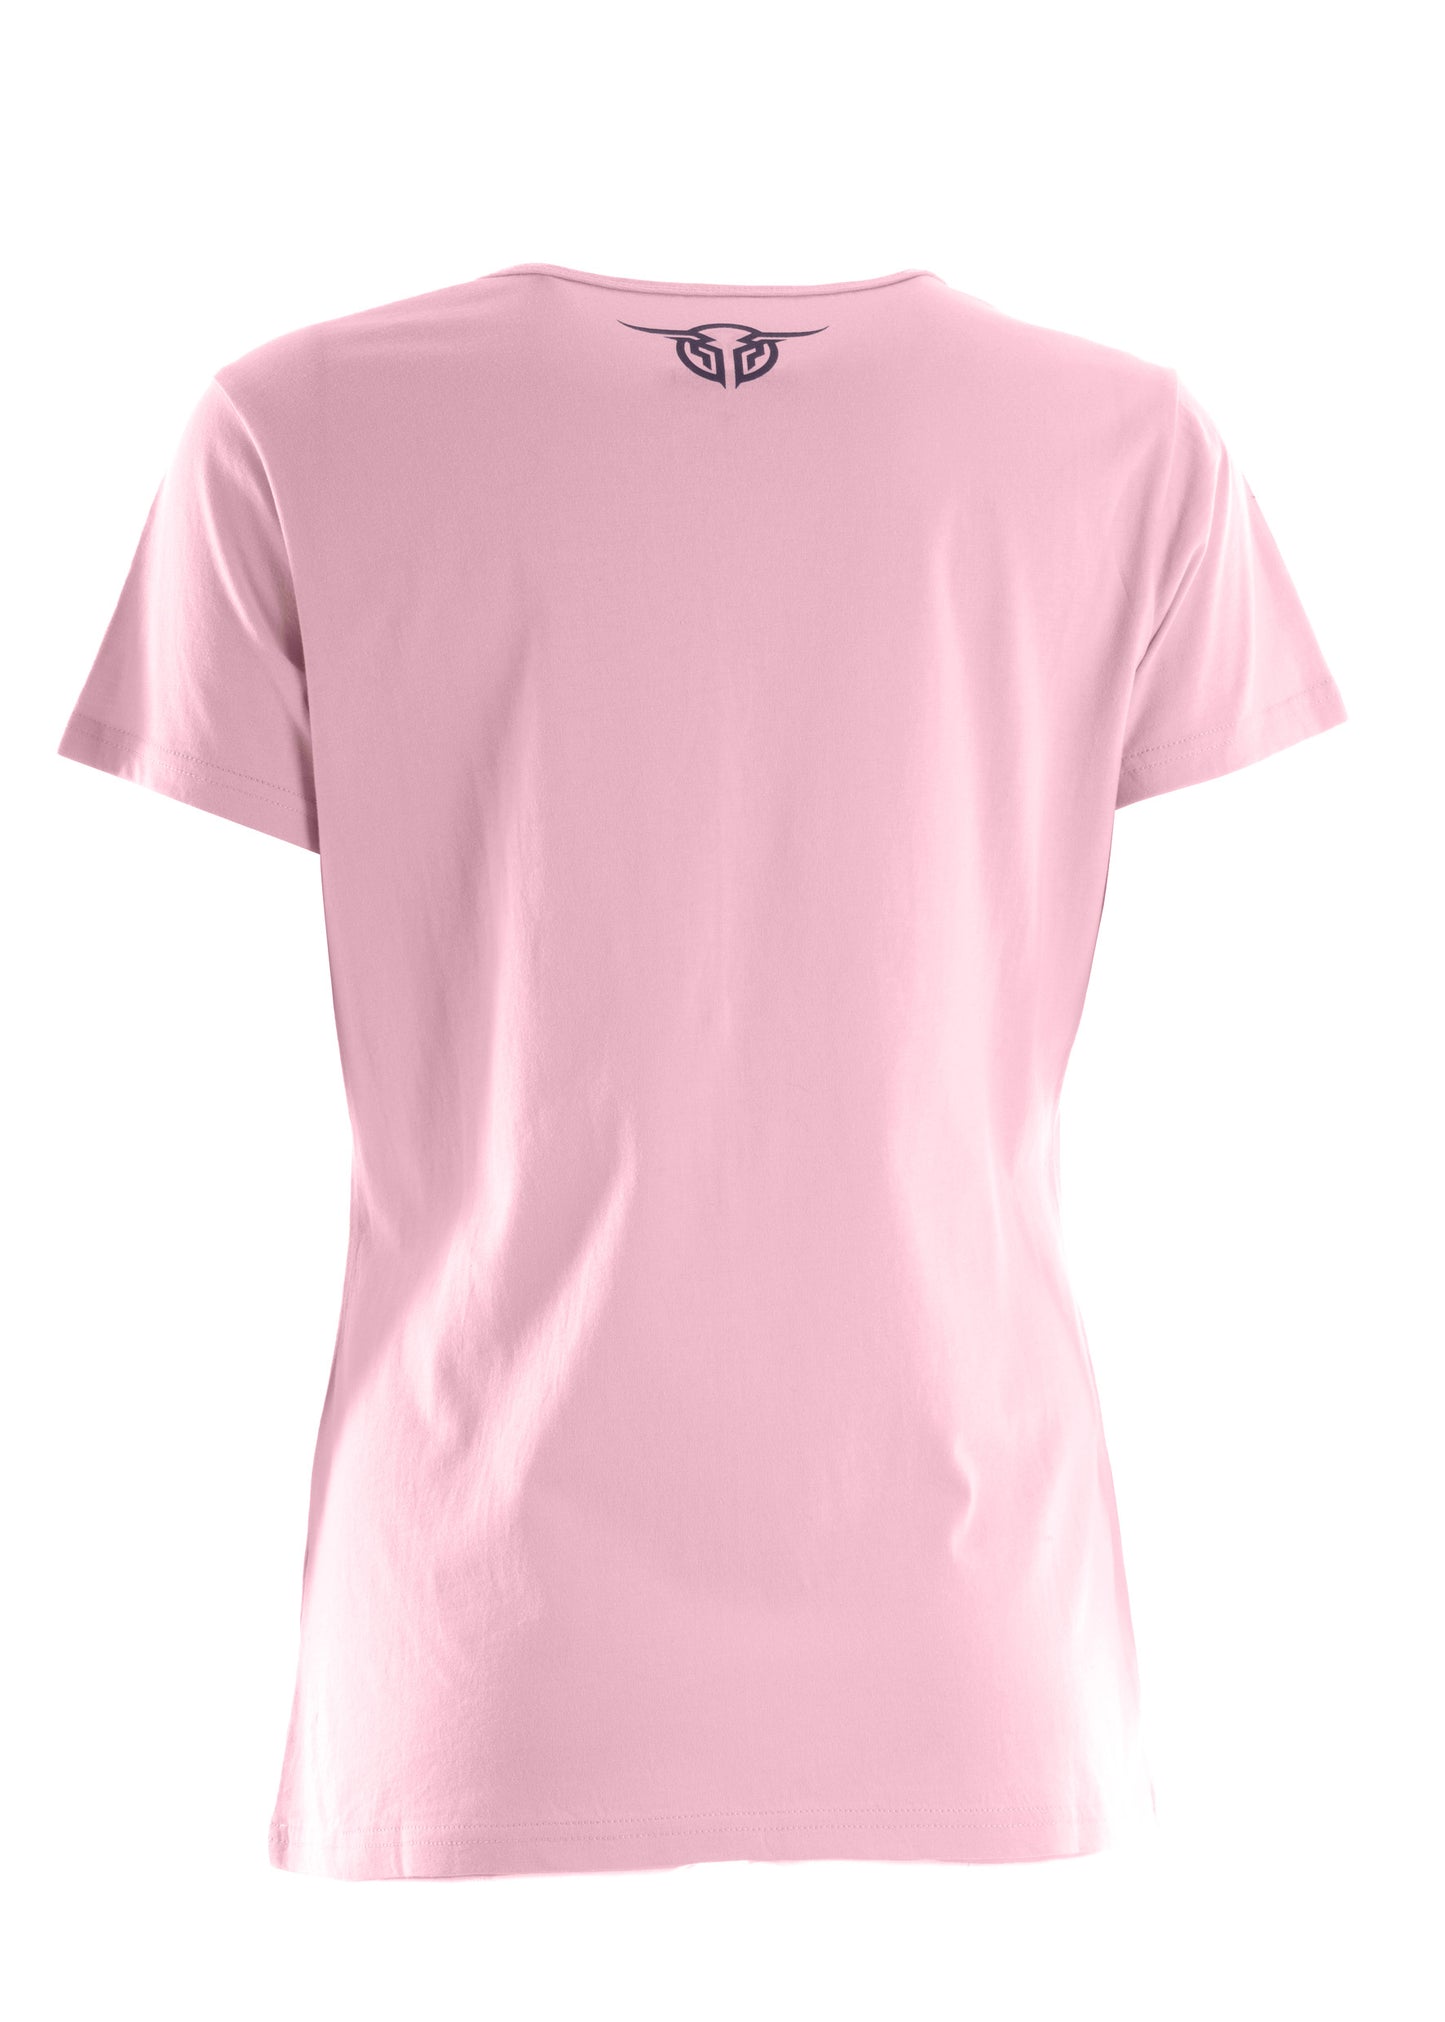 Bullzye Ladies Authentic Short Sleeve Tee - Pink - BCP2502225